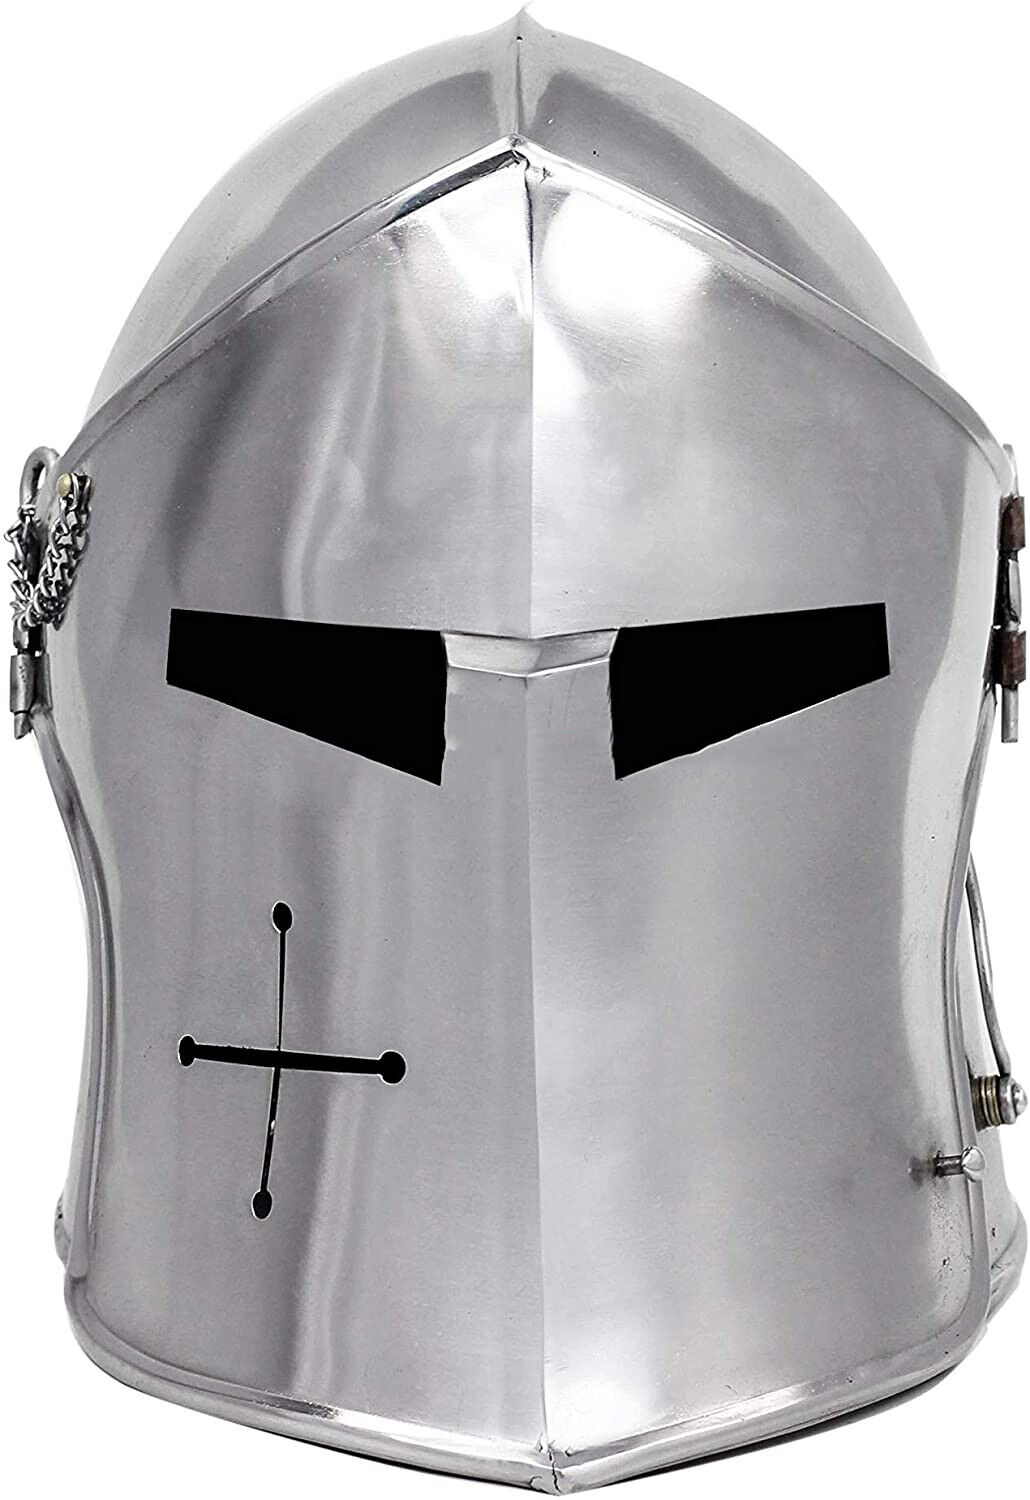 Spartan Costumes Medieval Knight Armor Barbuta Crusader Templar Helmet Wearable.